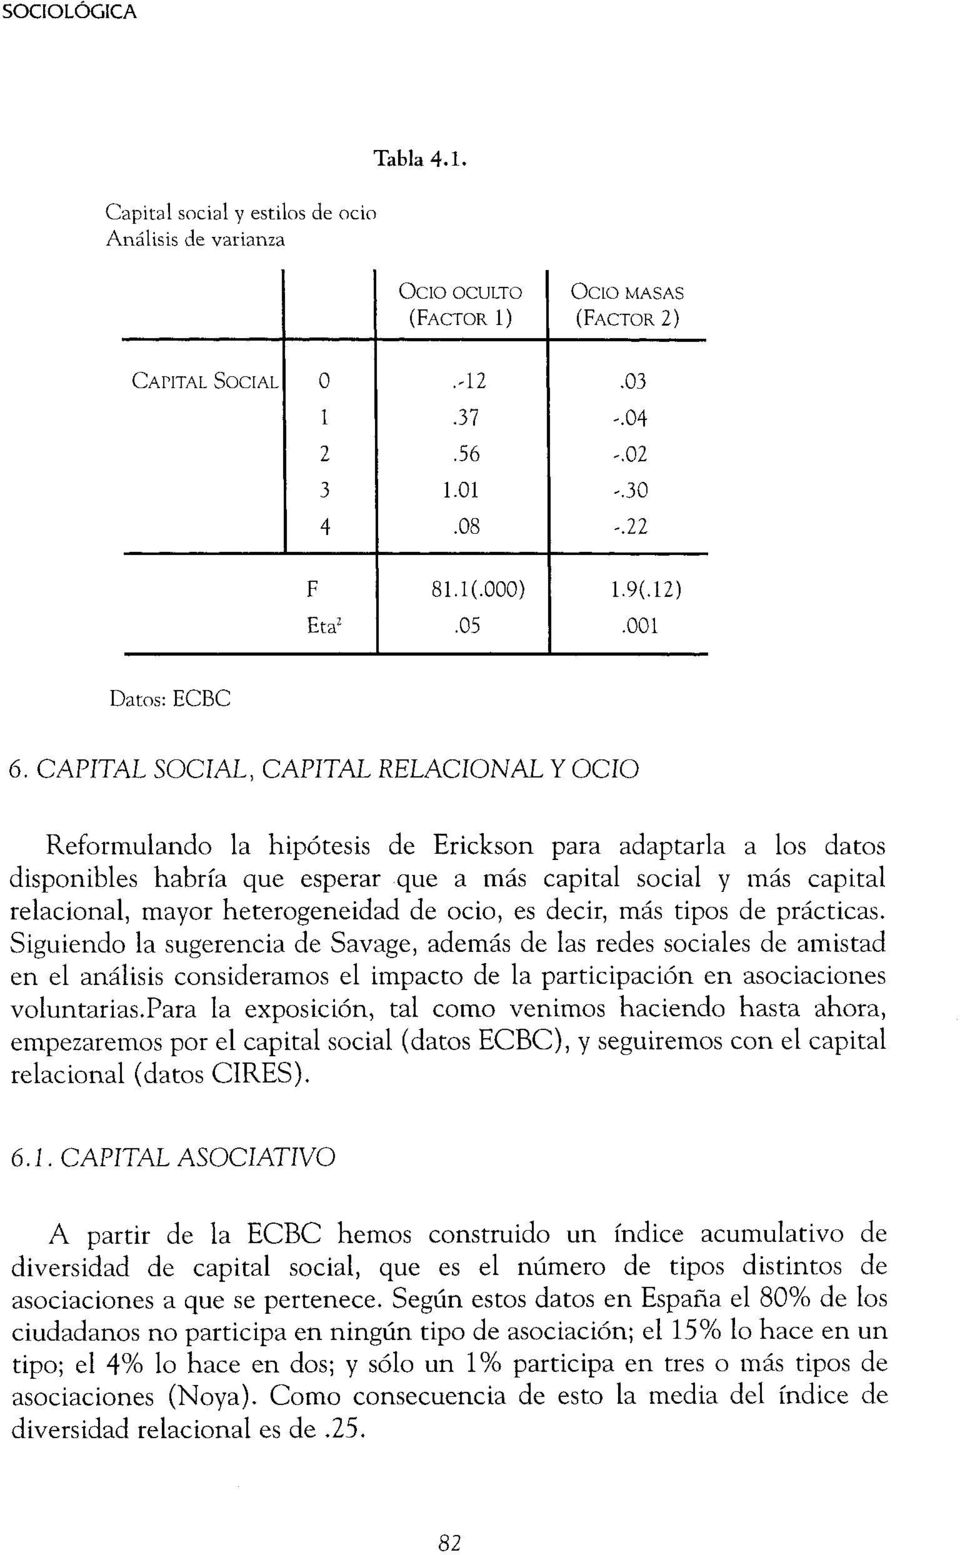 CAPITAL SOCIAL, CAPITAL RELACIONAL Y OCIO Reformulando la hipótesis de Erickson para adaptarla a los datos disponibles habría que esperar que a más capital social y luás capital relacional, mayor